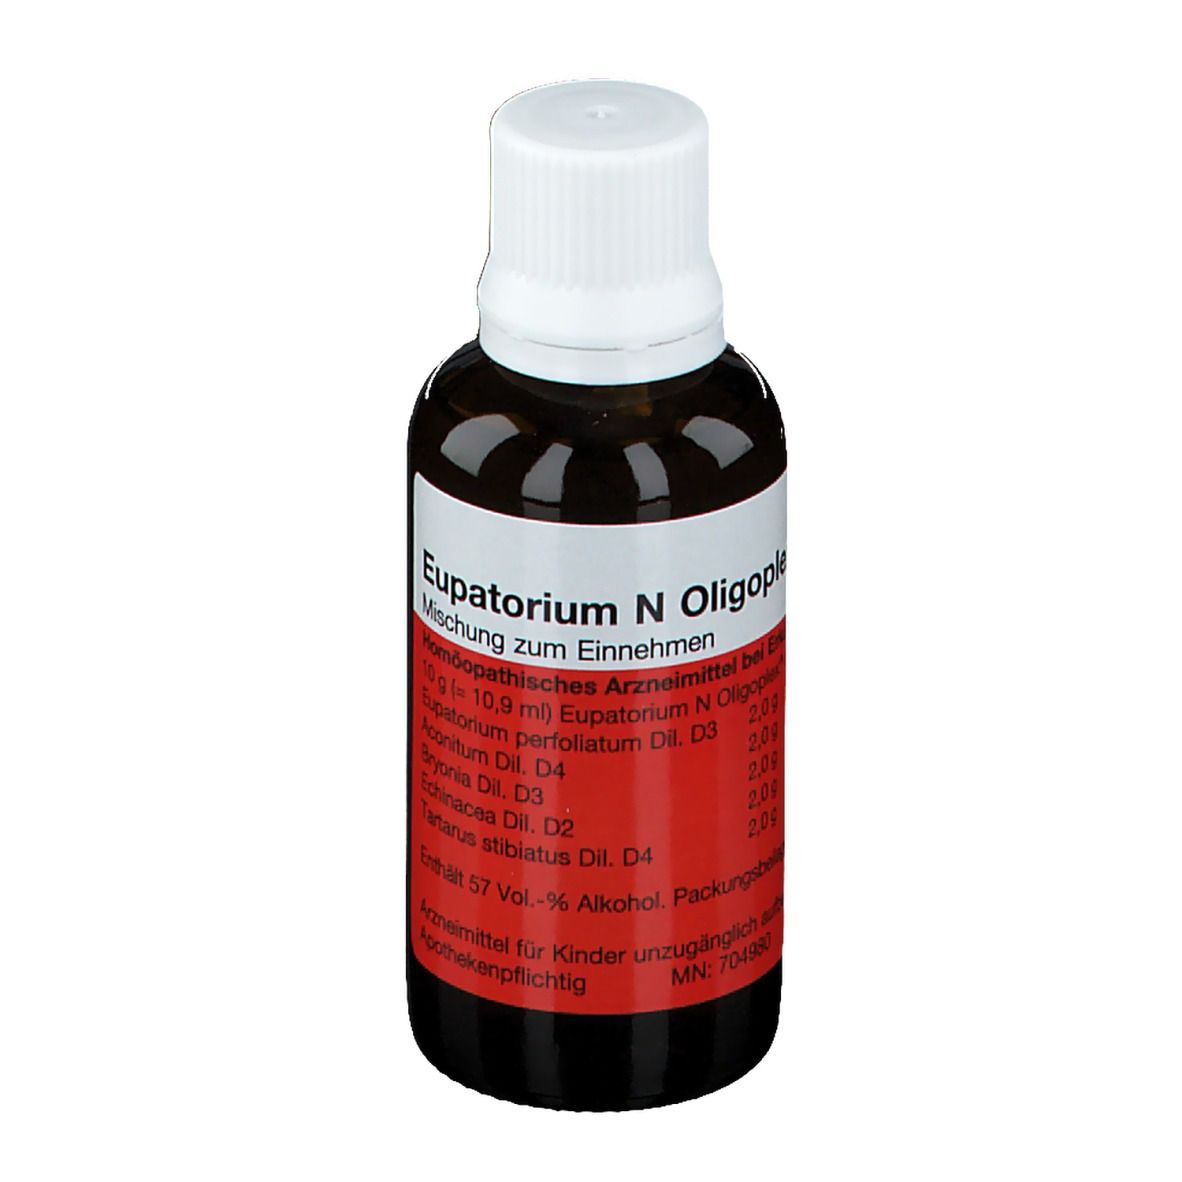 Eupatorium N Oligoplex Liquid